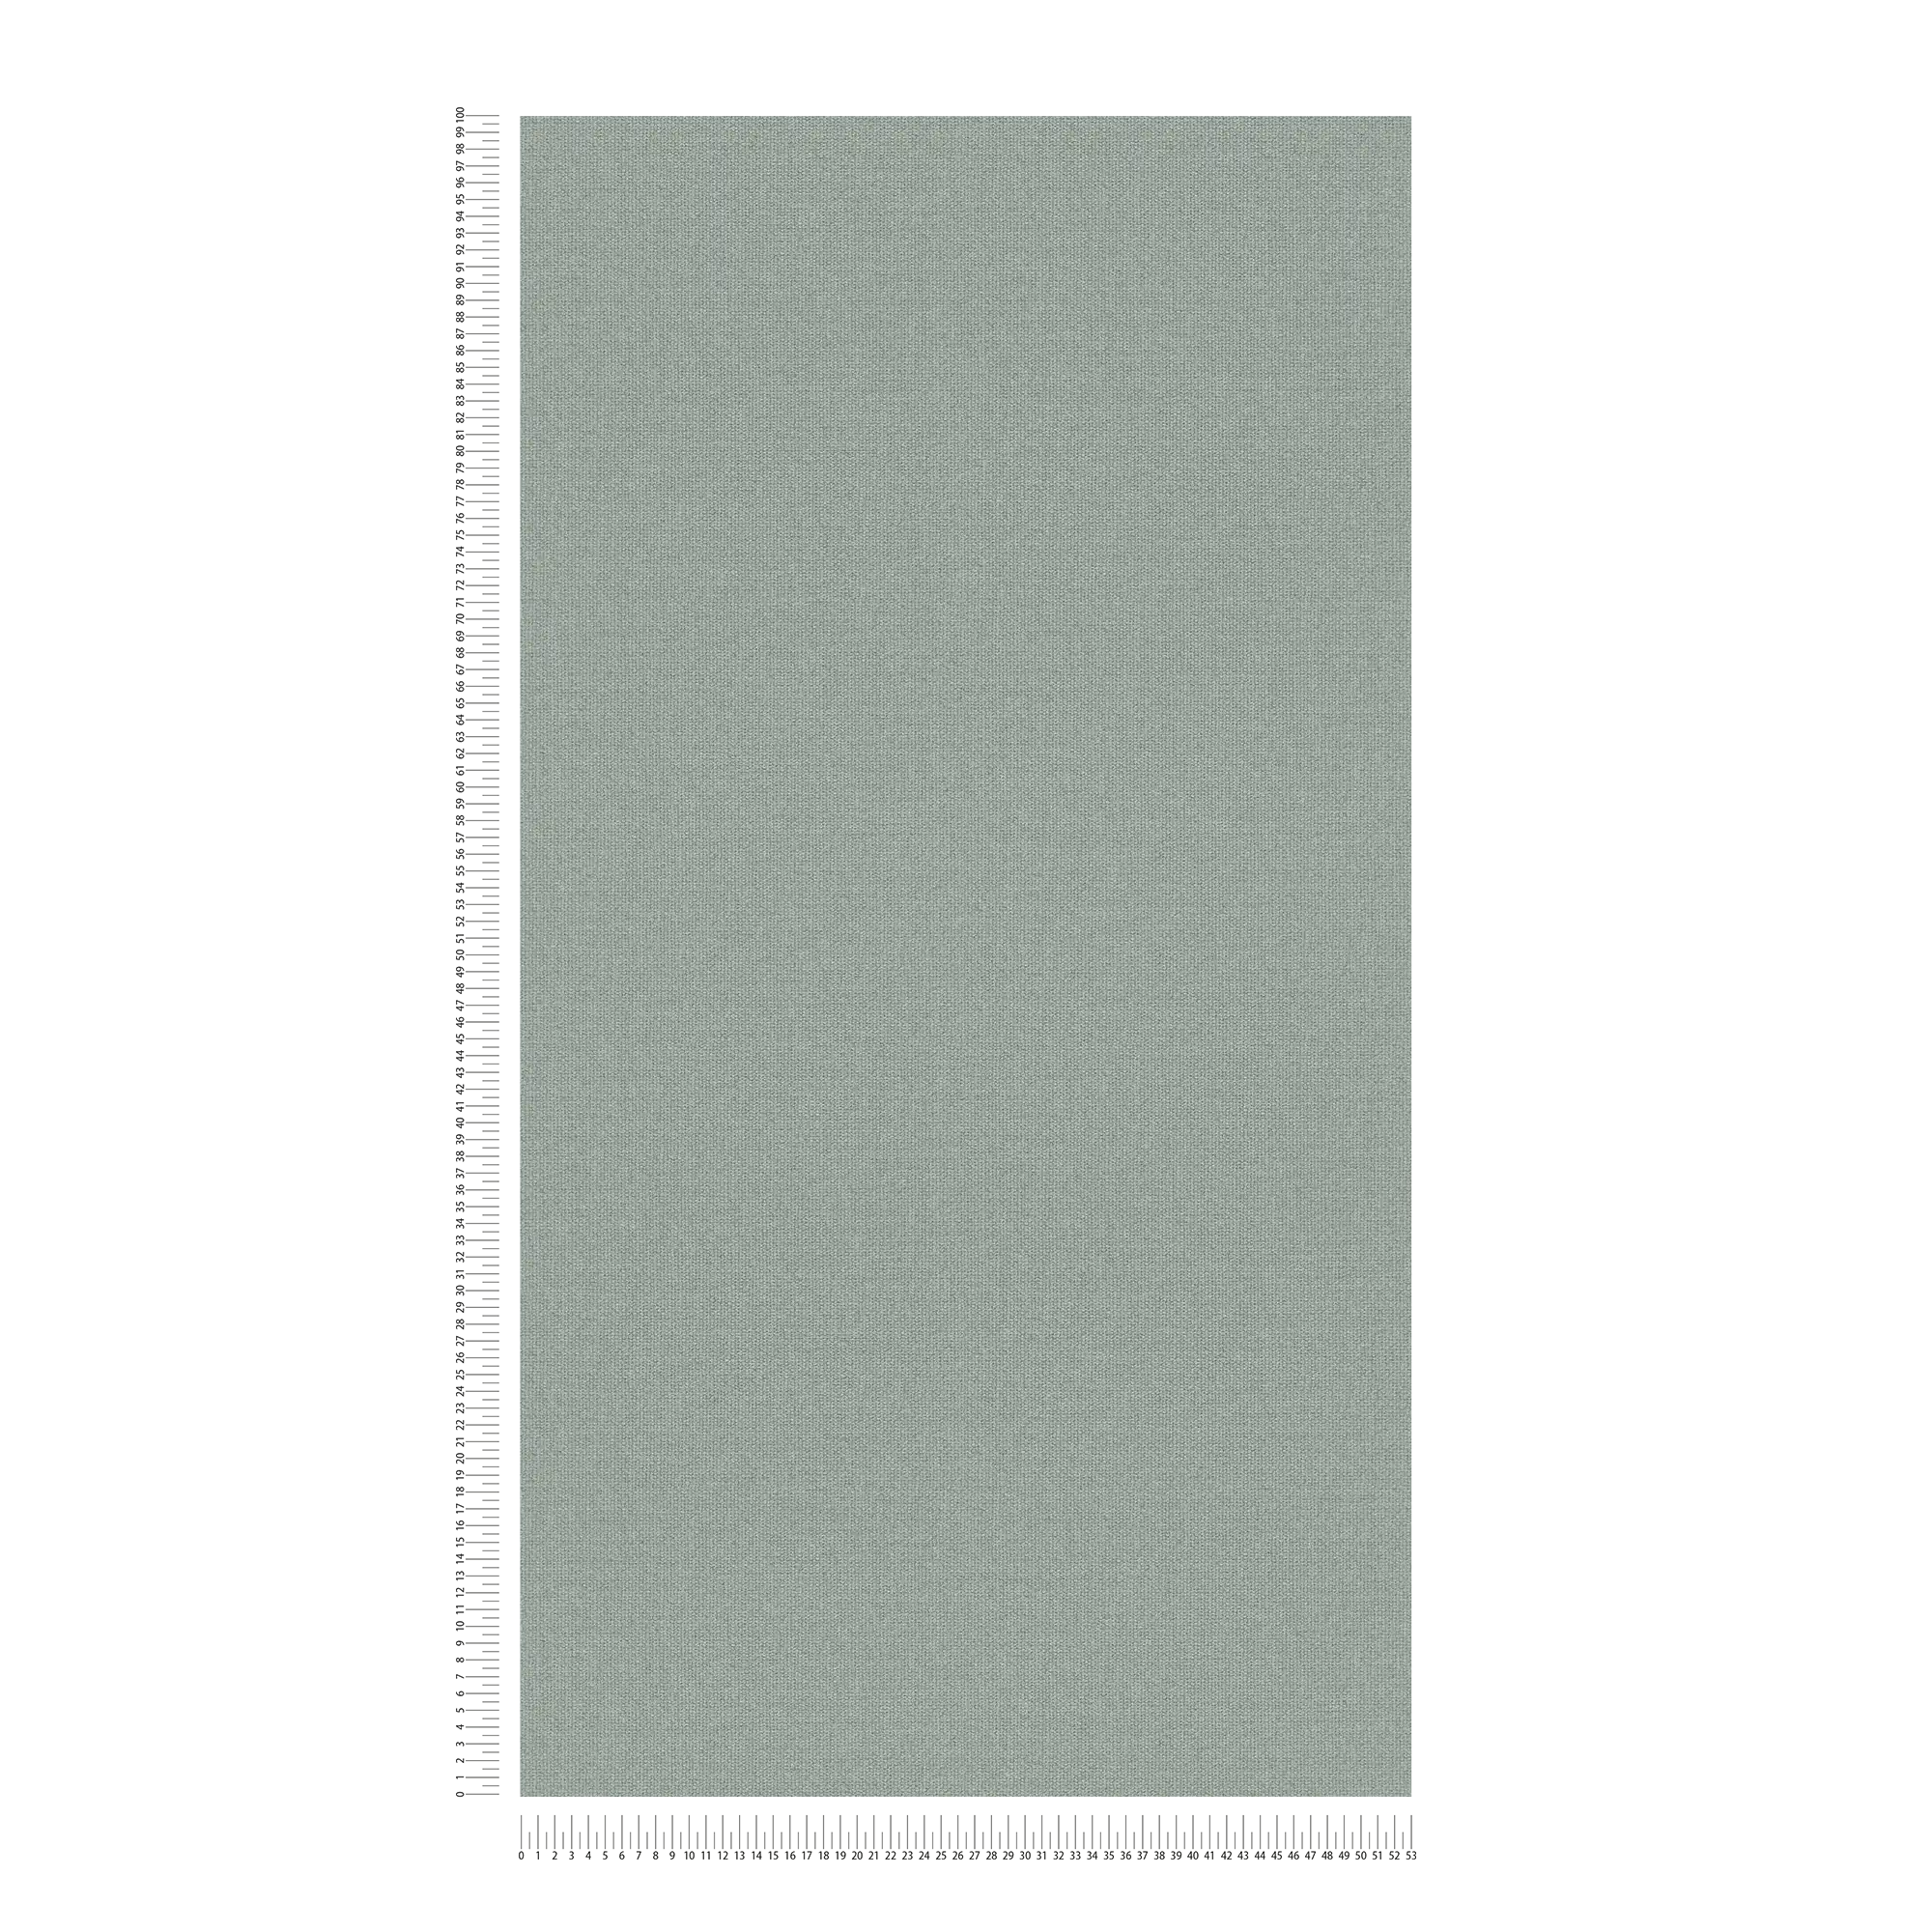             Textiloptik papier peint intissé avec effet structuré, uni - vert
        